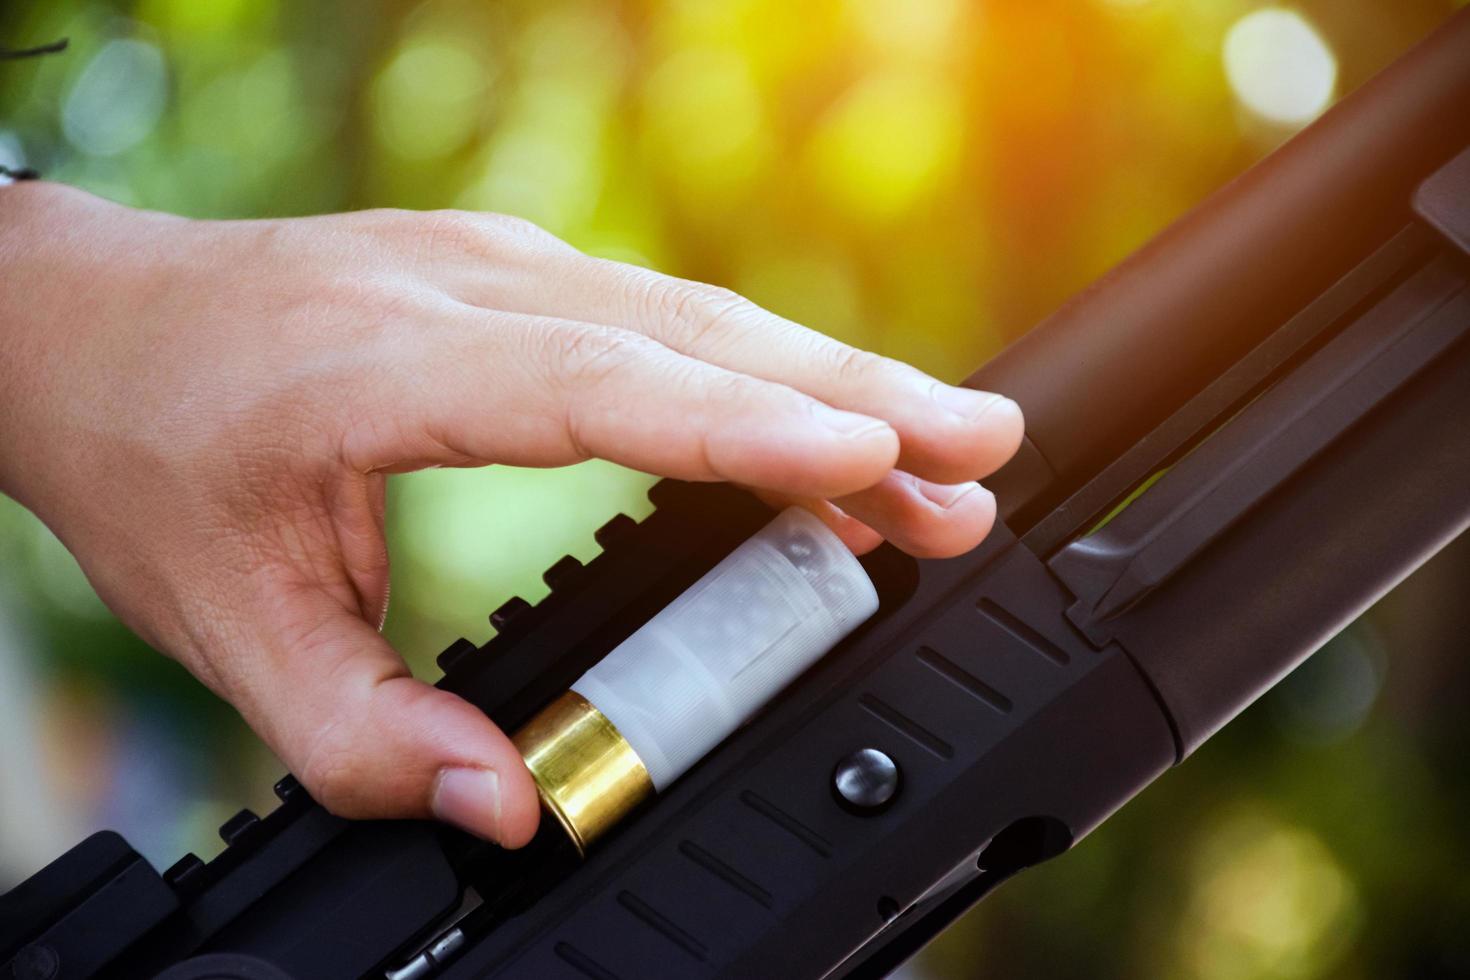 un tiratore di fucile sta caricando un colpo nella canna di un fucile lungo. foto